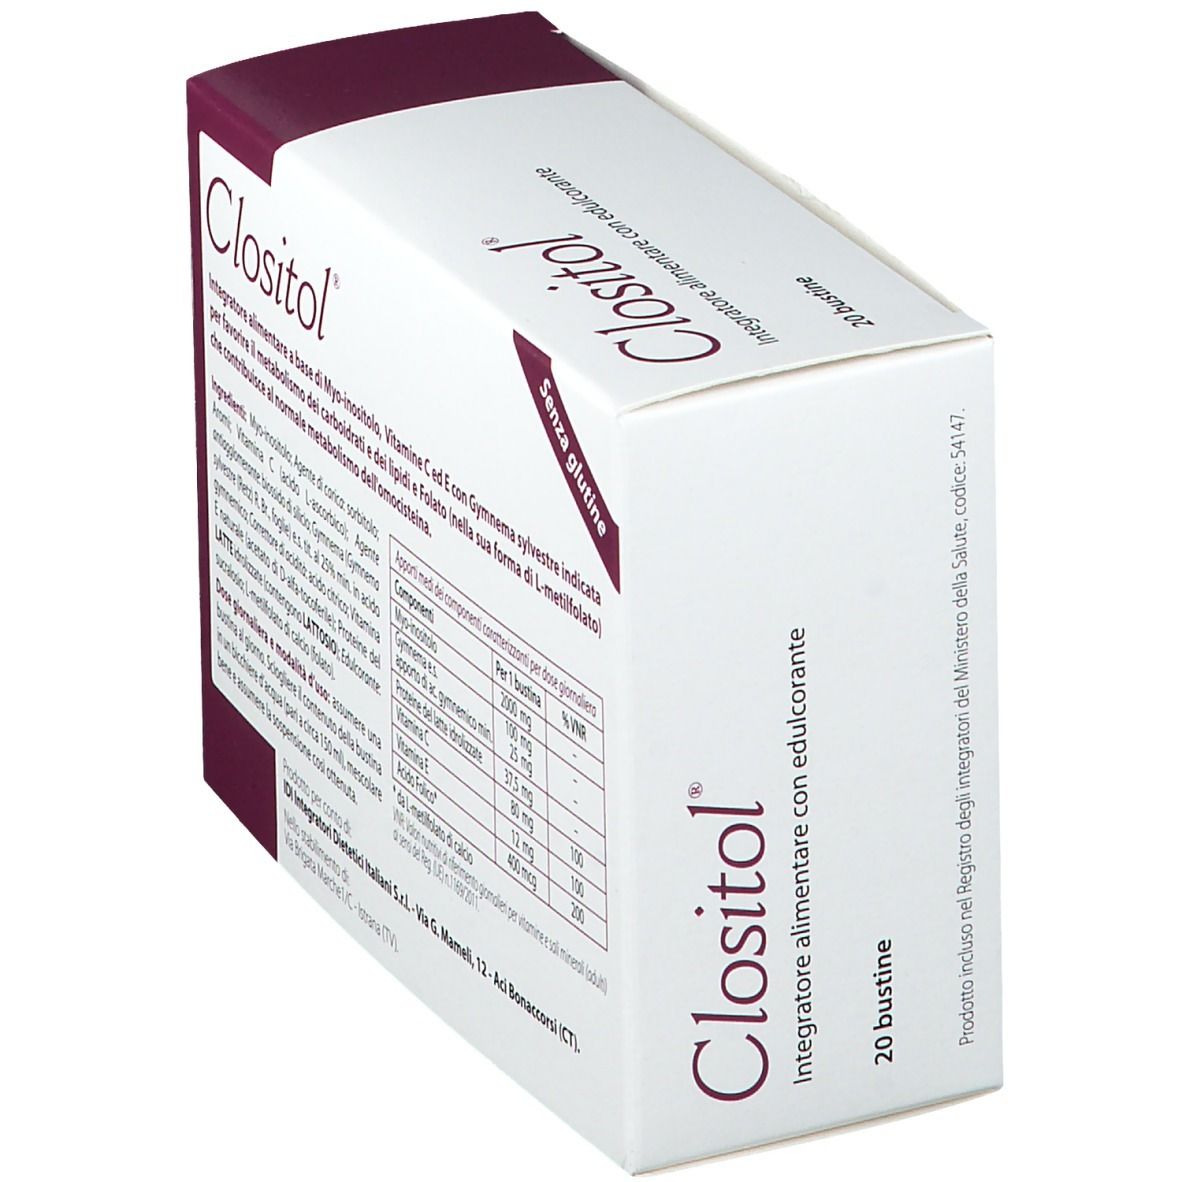 Clositol®